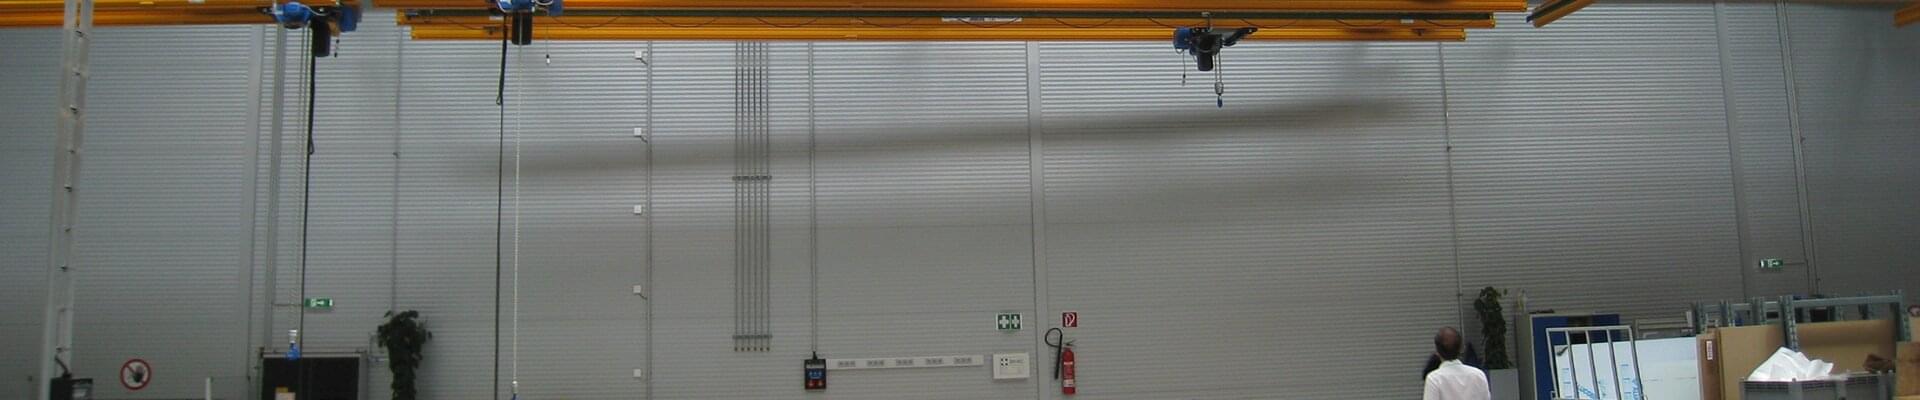 System przenośników podwieszanych firmy ABUS w hali produkcyjnej profili aluminiowych i kompozytów w Austrii 